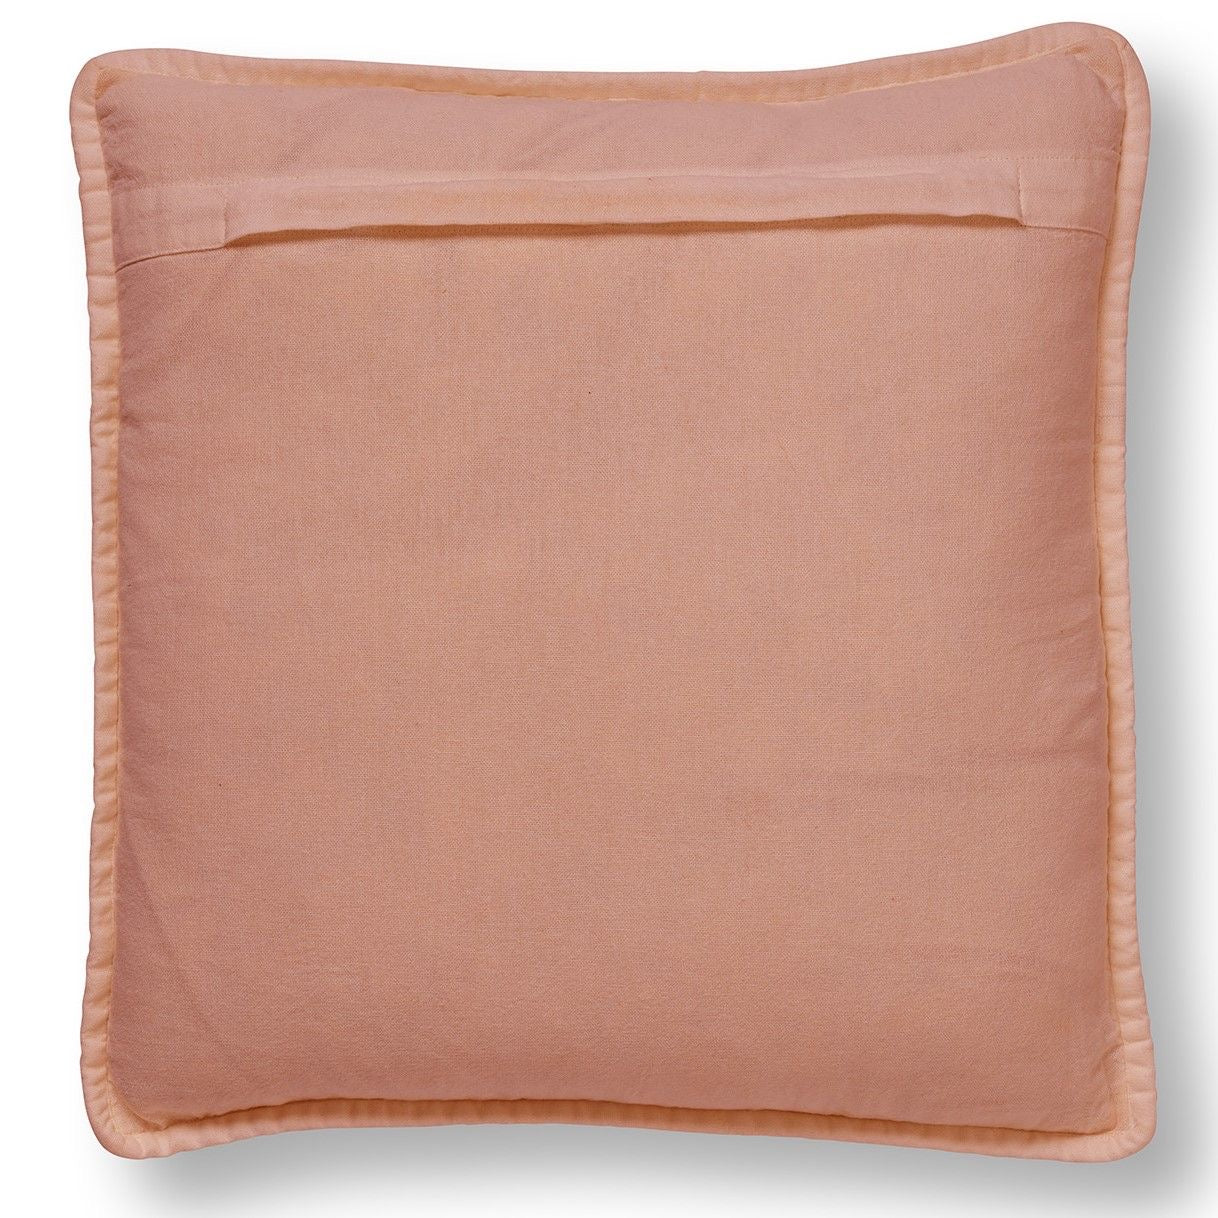 Bonnie pillow